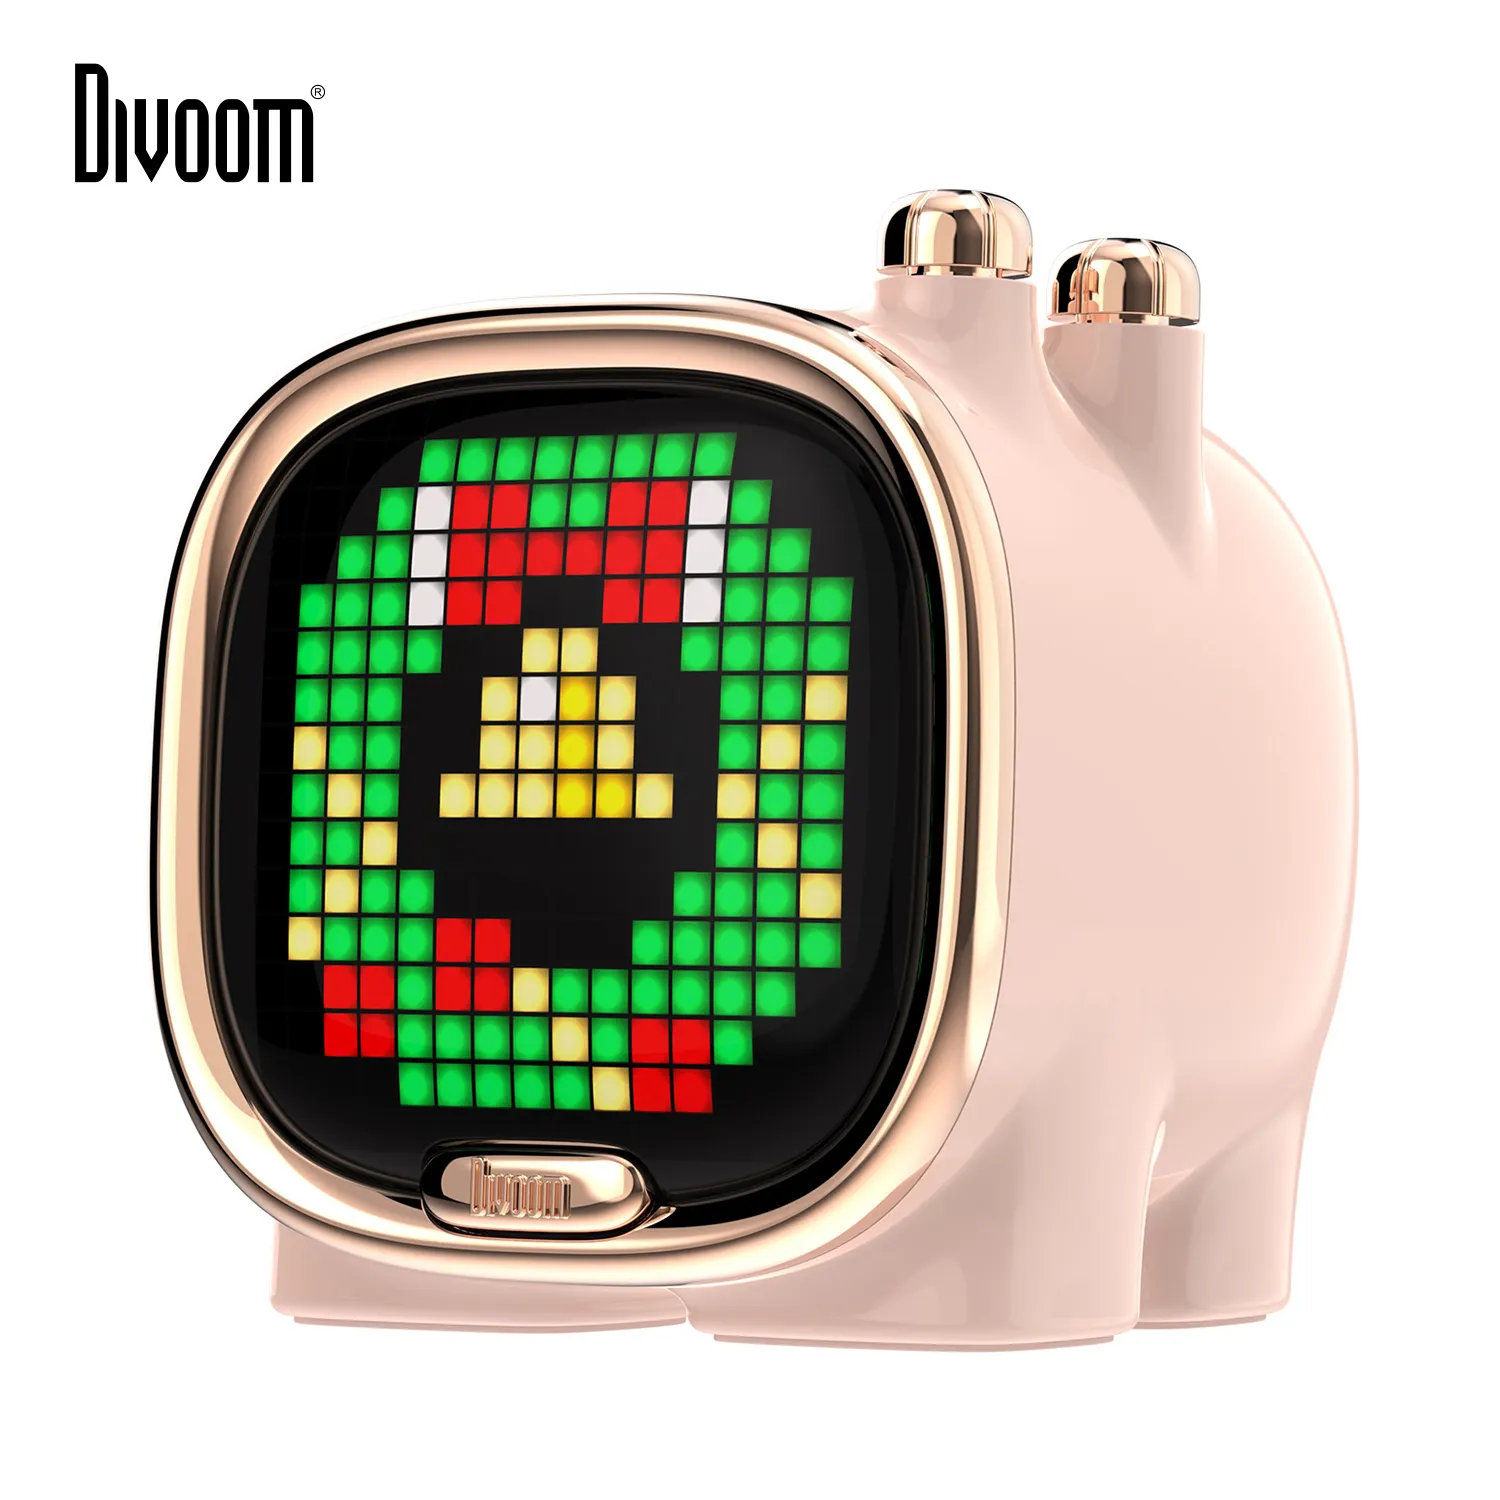 Divoom Zooe Pixel ArtBTスピーカーポータブルミニサイズワイヤレスデスクセットアップミュージックDJかわいいDIY時計効果音